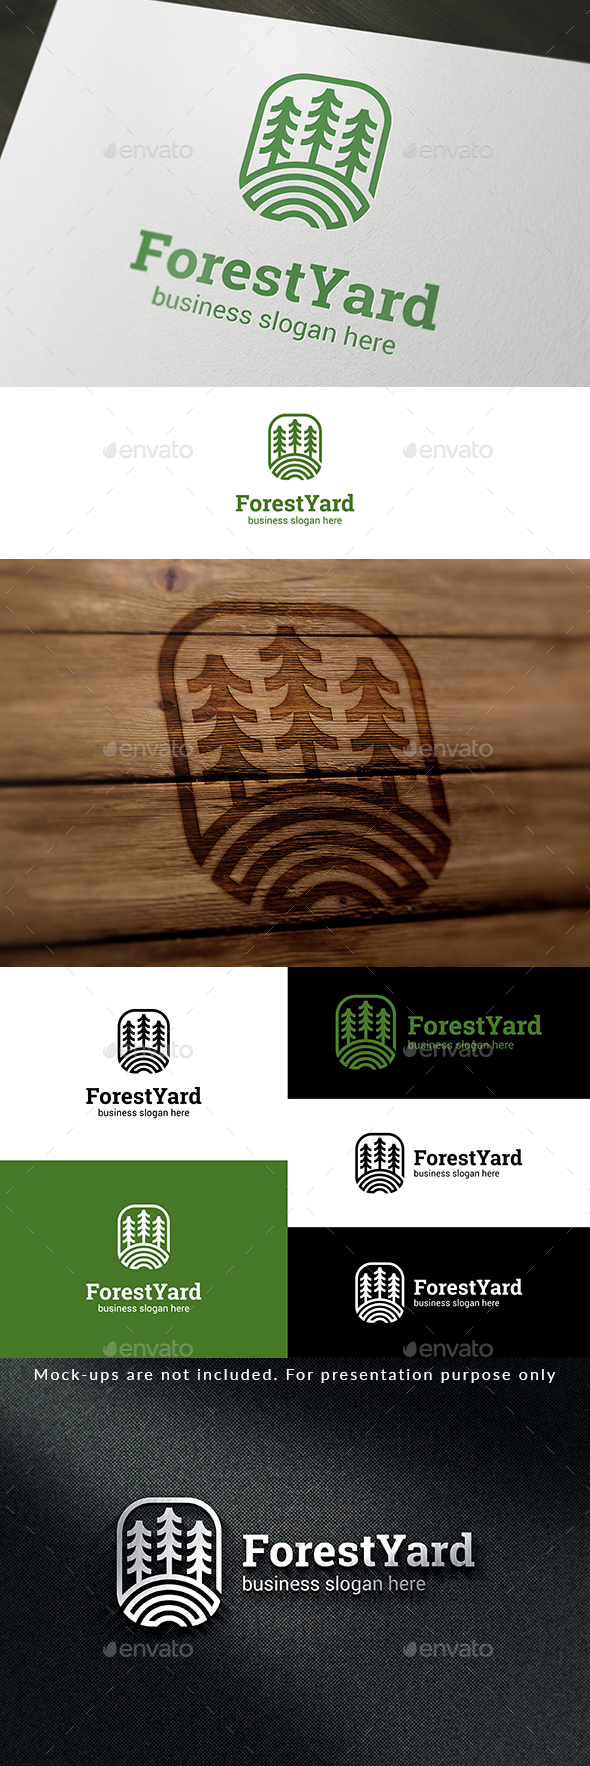 Forest Yard Logo